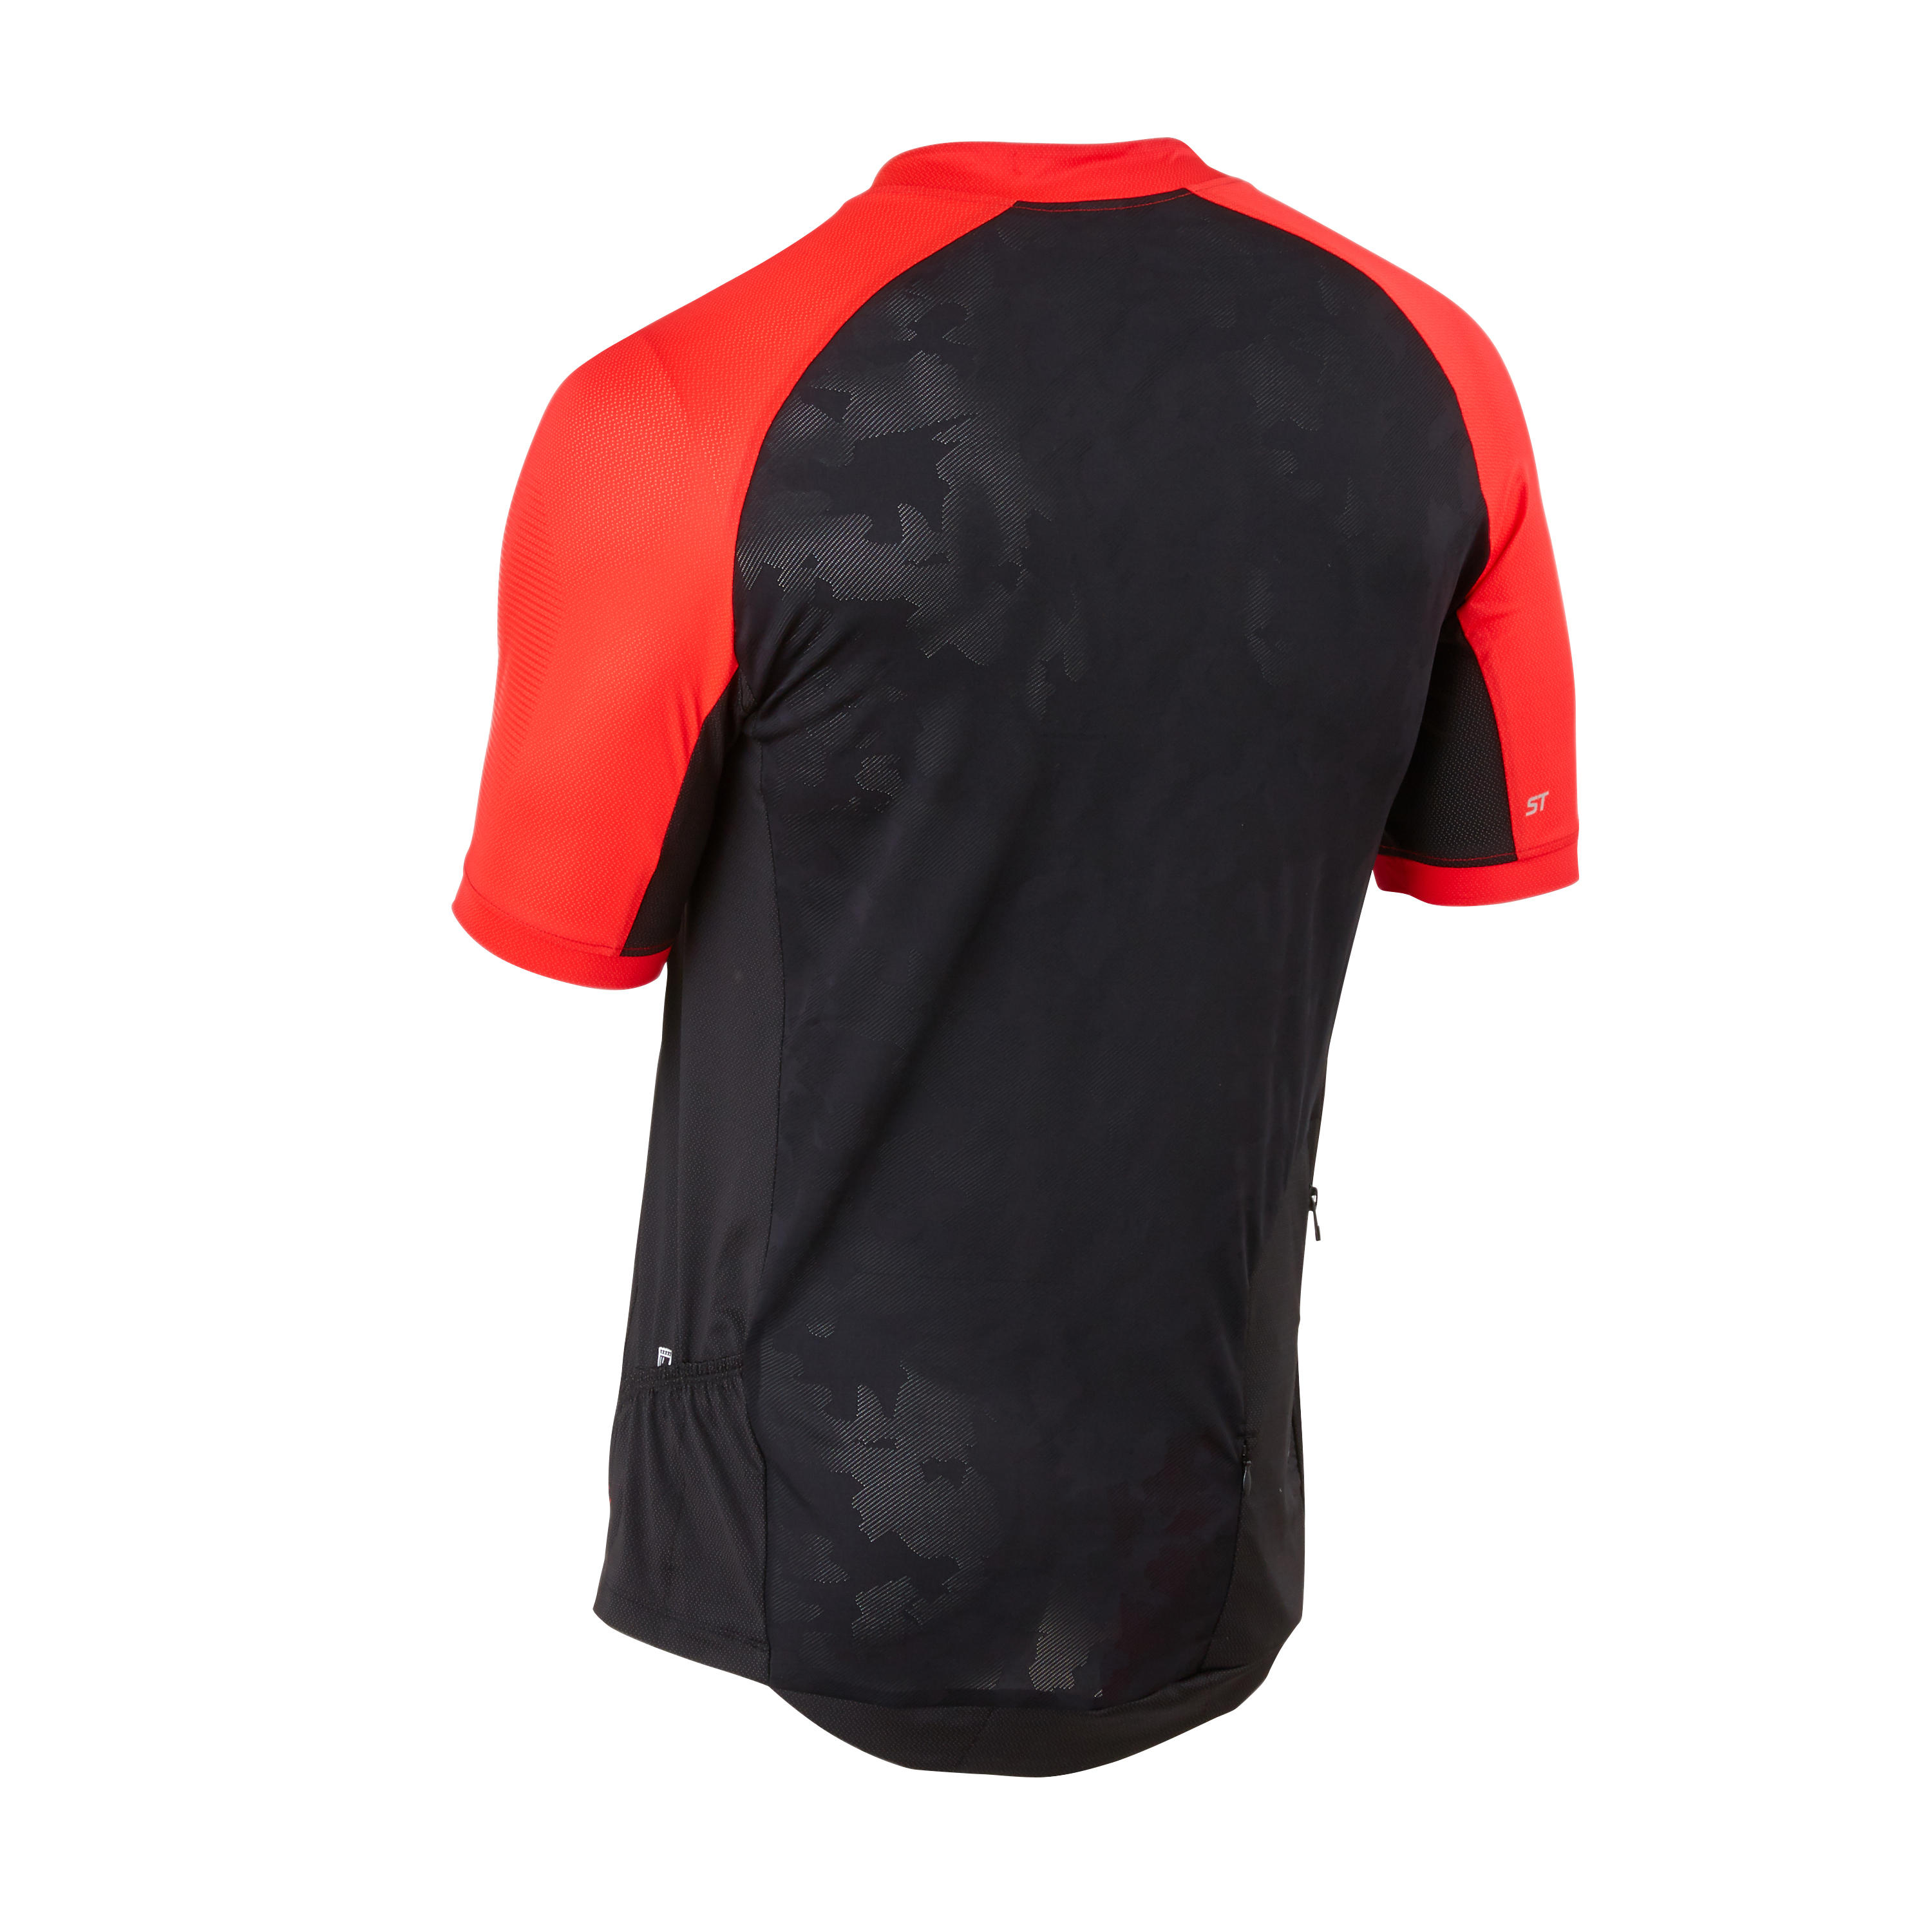 Short-Sleeved Mountain Biking Jersey - Black/Red 9/9